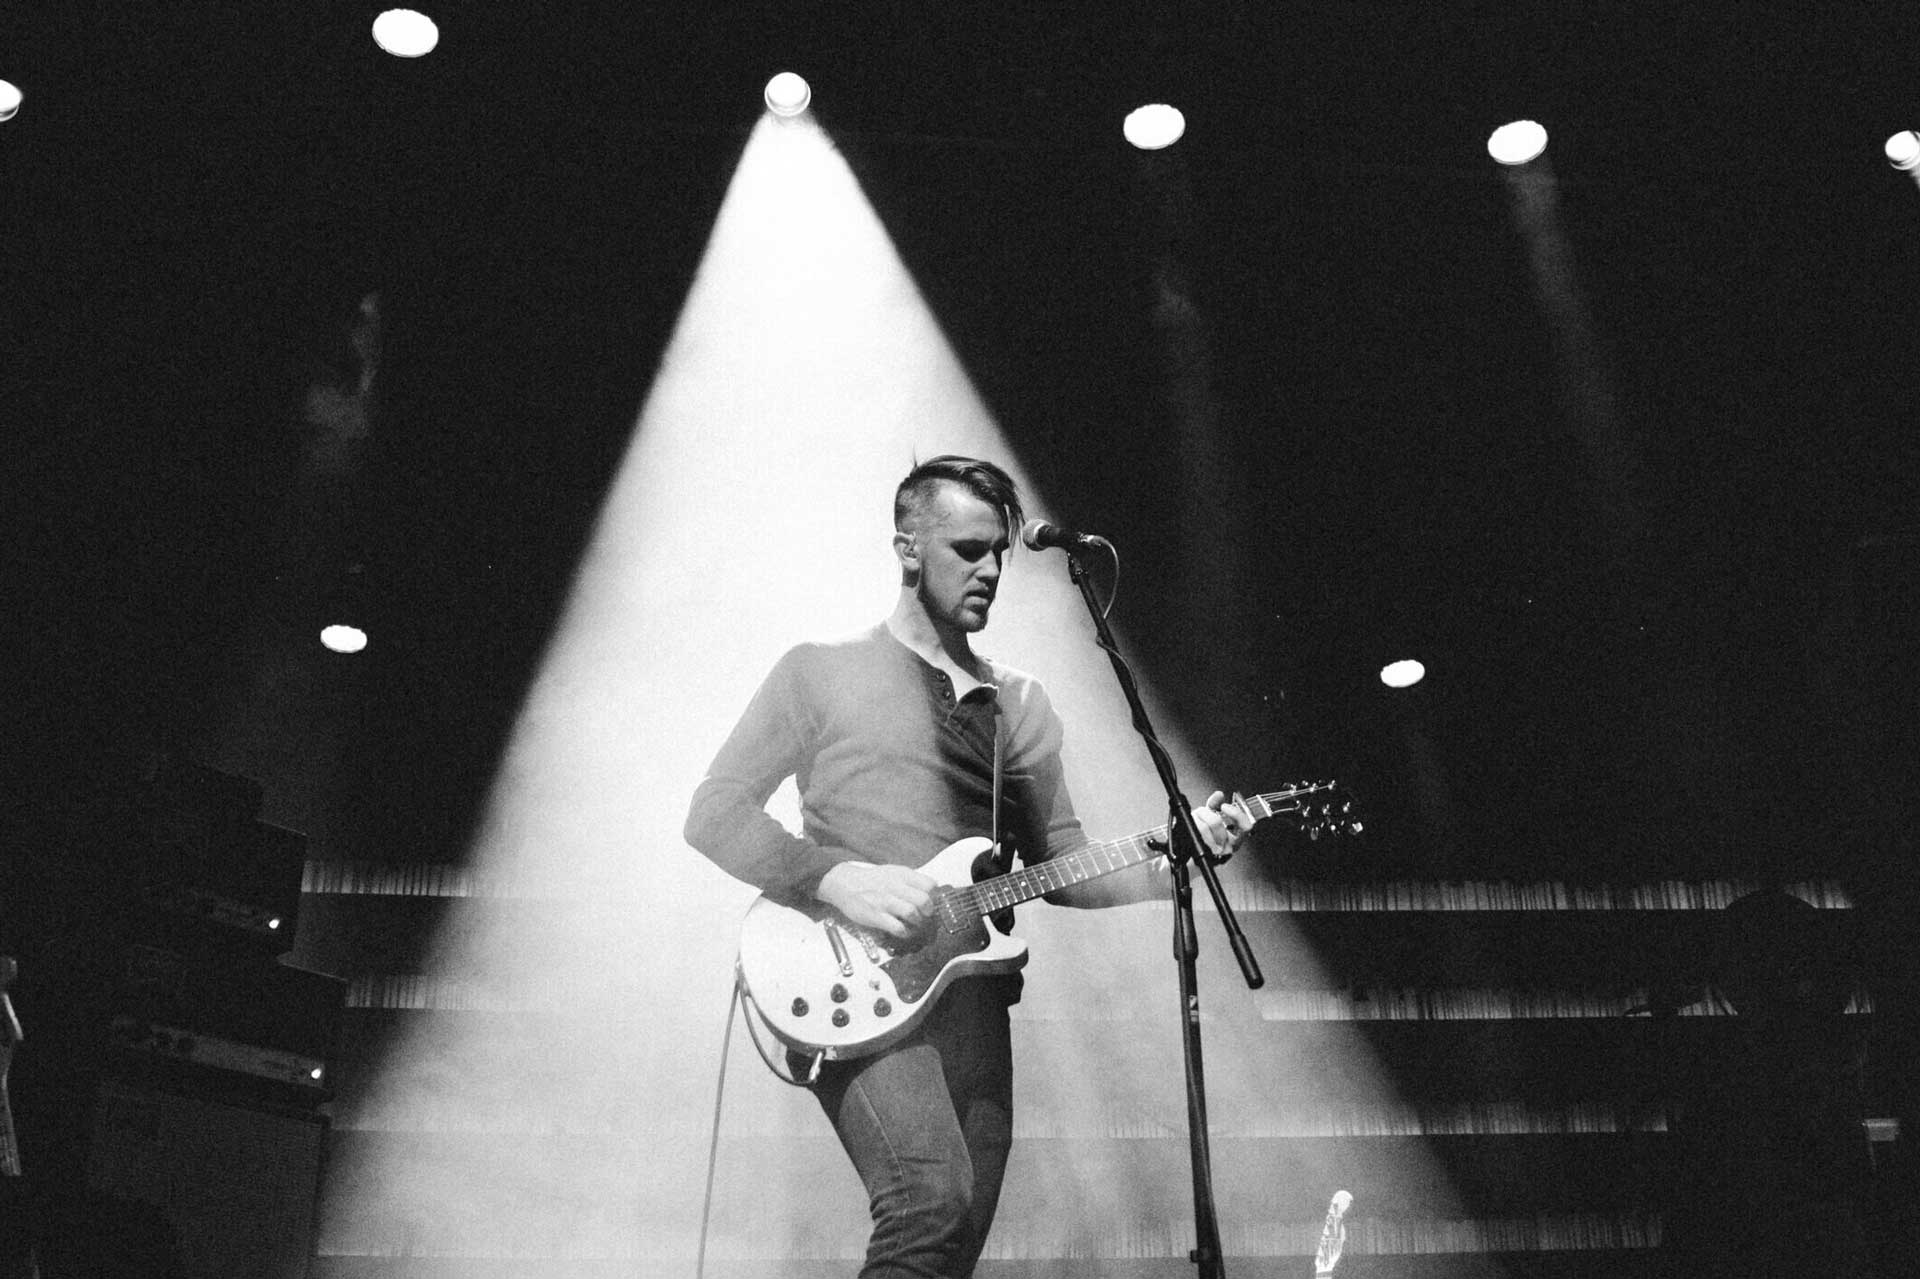 Muzikant Peter Ferguson op het podium met een gitaar en microfoon in de spotlight